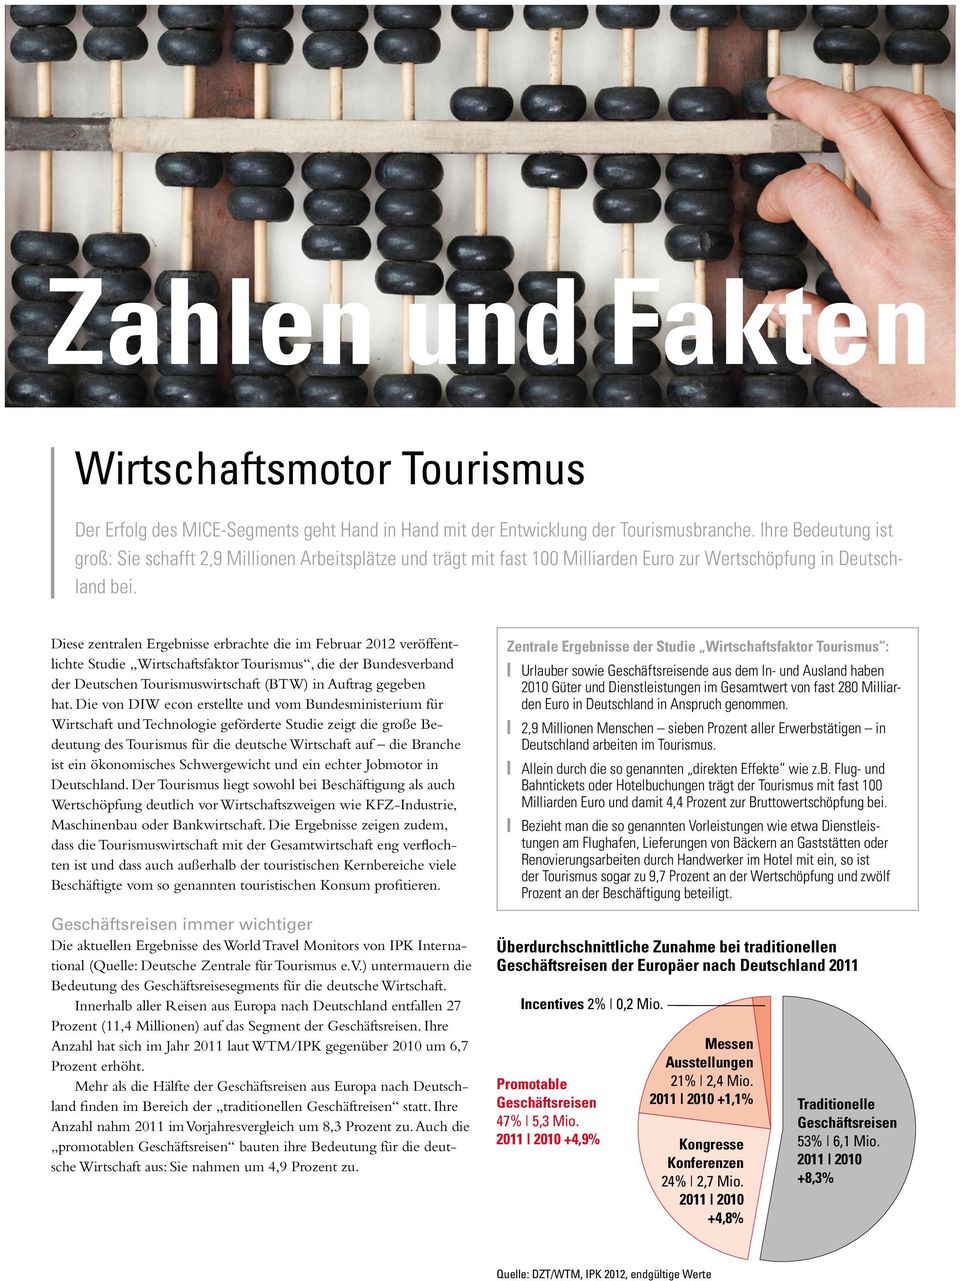 Diese zentralen Ergebnisse erbrachte die im Februar 2012 veröffentlichte Studie Wirtschaftsfaktor Tourismus, die der Bundesverband der Deutschen Tourismuswirtschaft (BTW) in Auftrag gegeben hat.